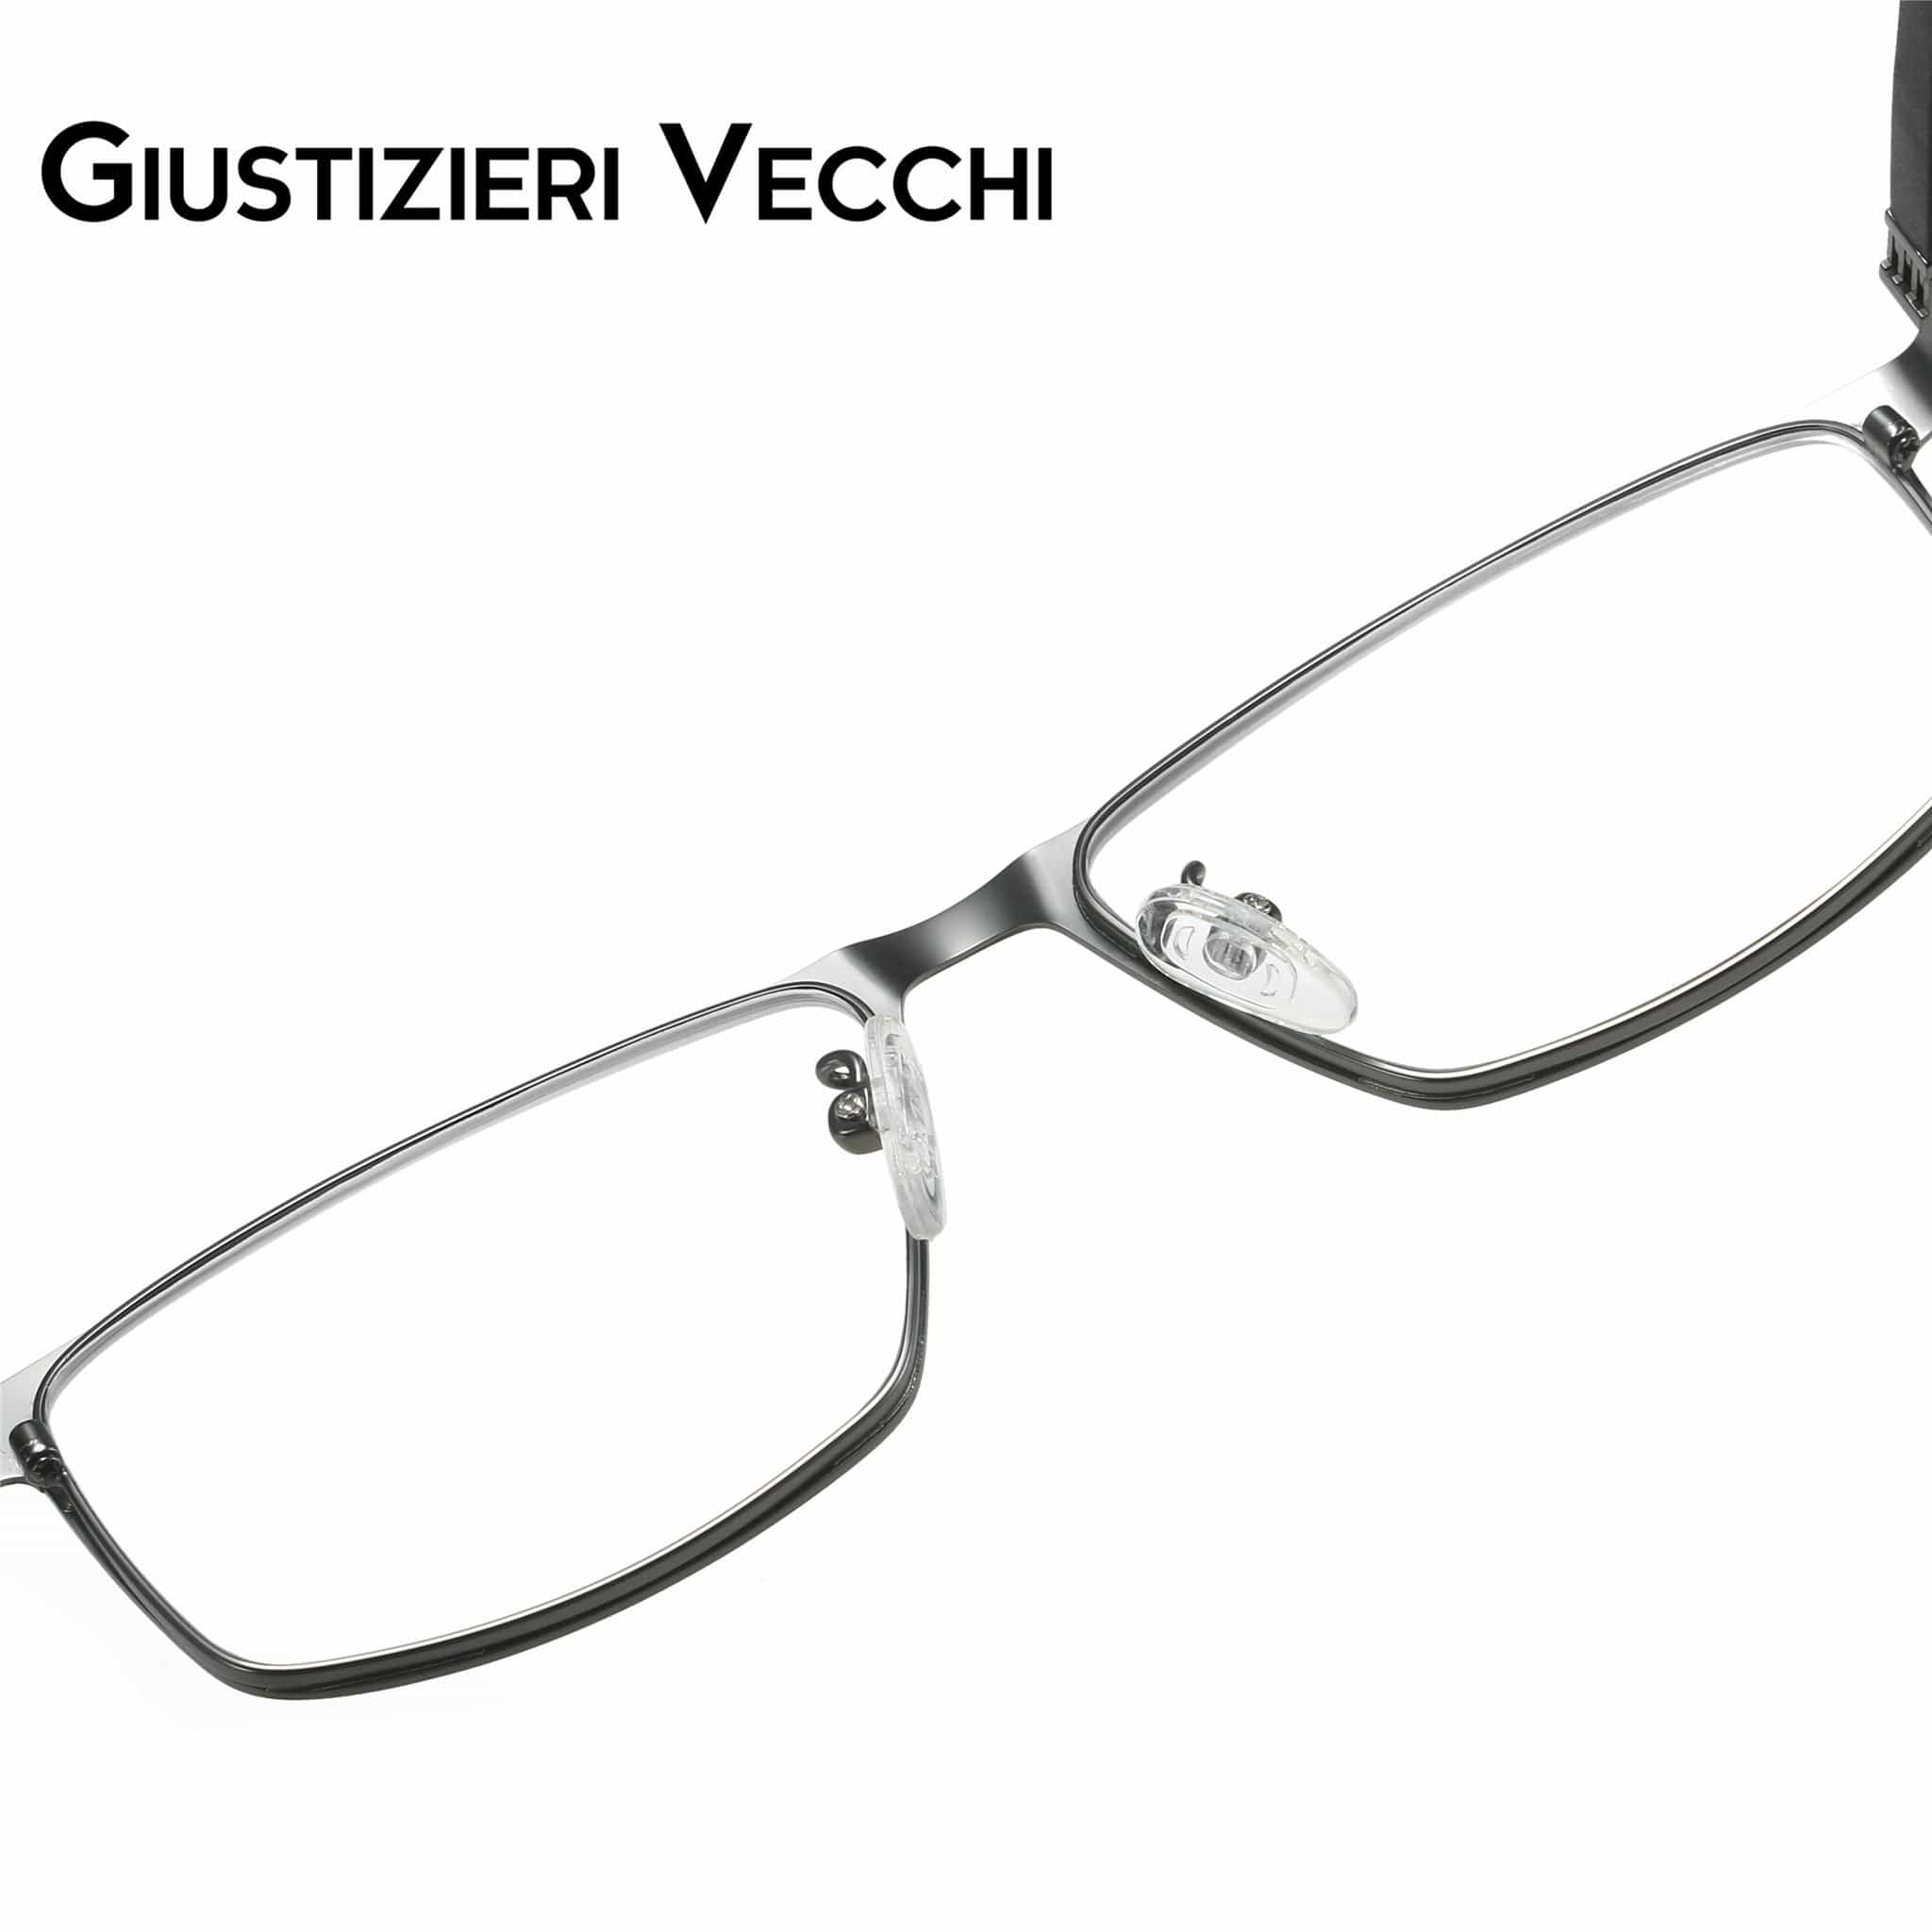 GIUSTIZIERI VECCHI Eyeglasses IceStorm Uno